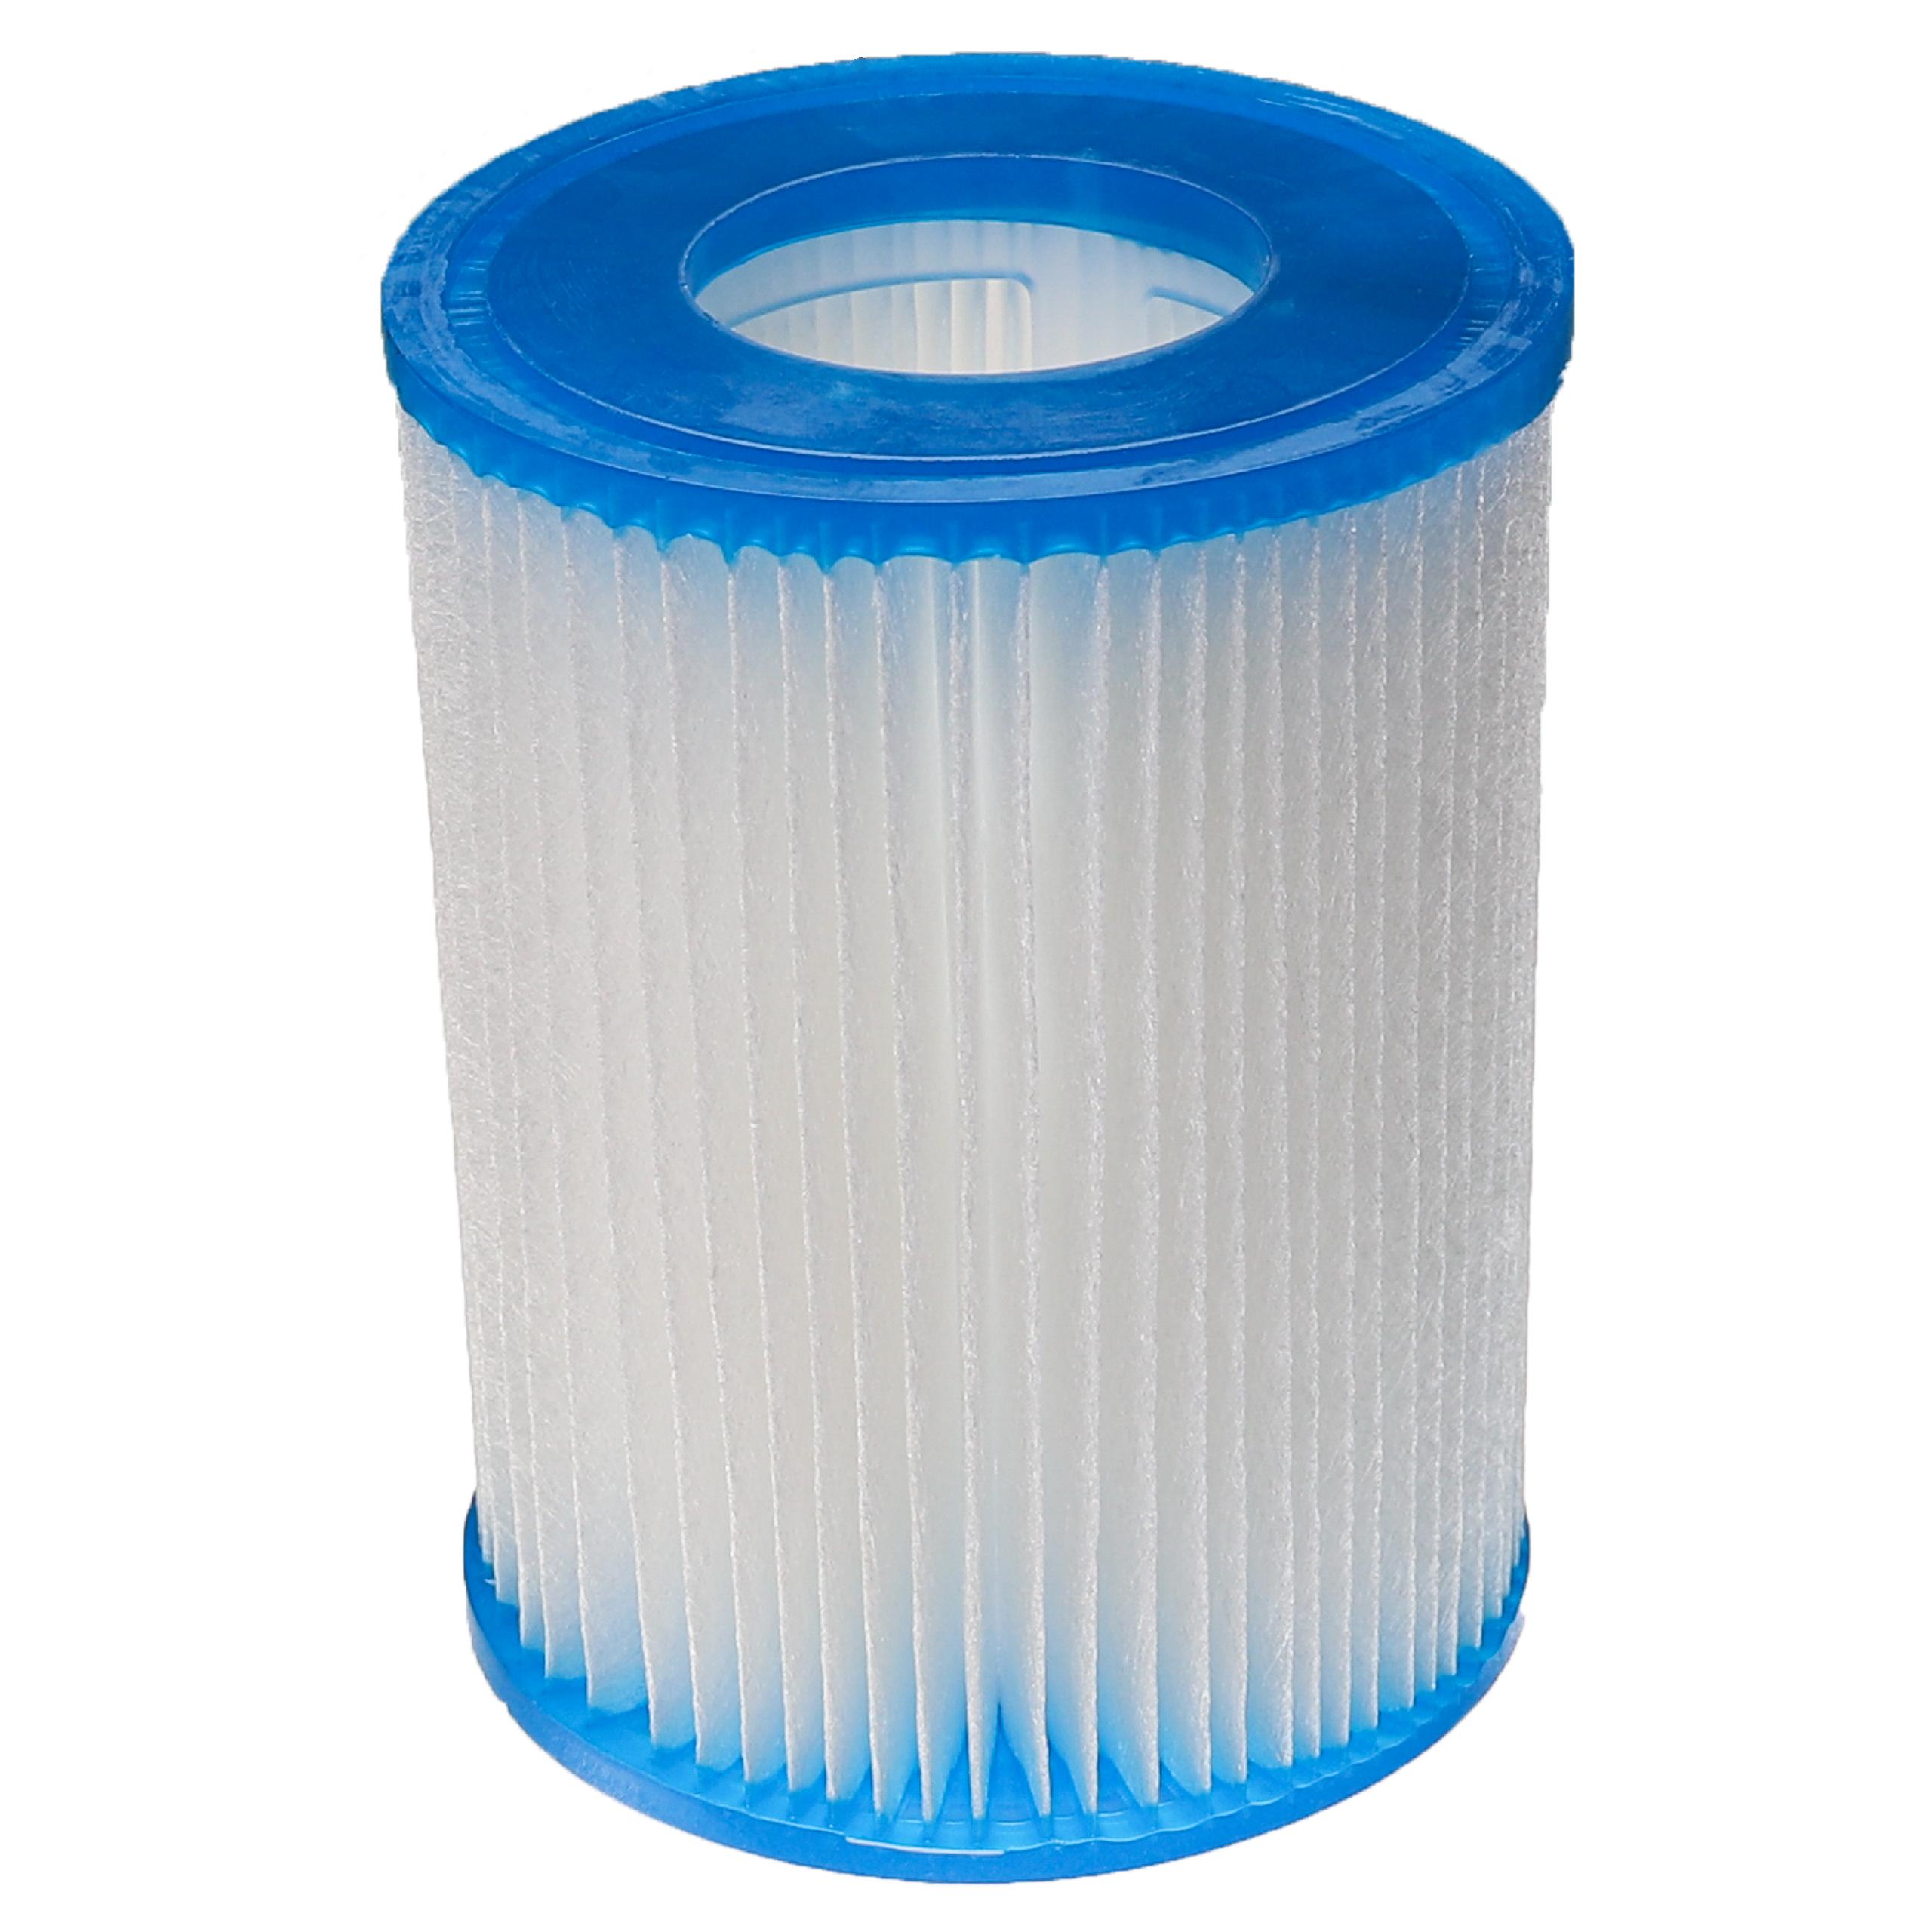 Filtro dell'acqua sostituisce Bestway FD2137, Typ II per piscina, pompa filtro - cartuccia filtrante